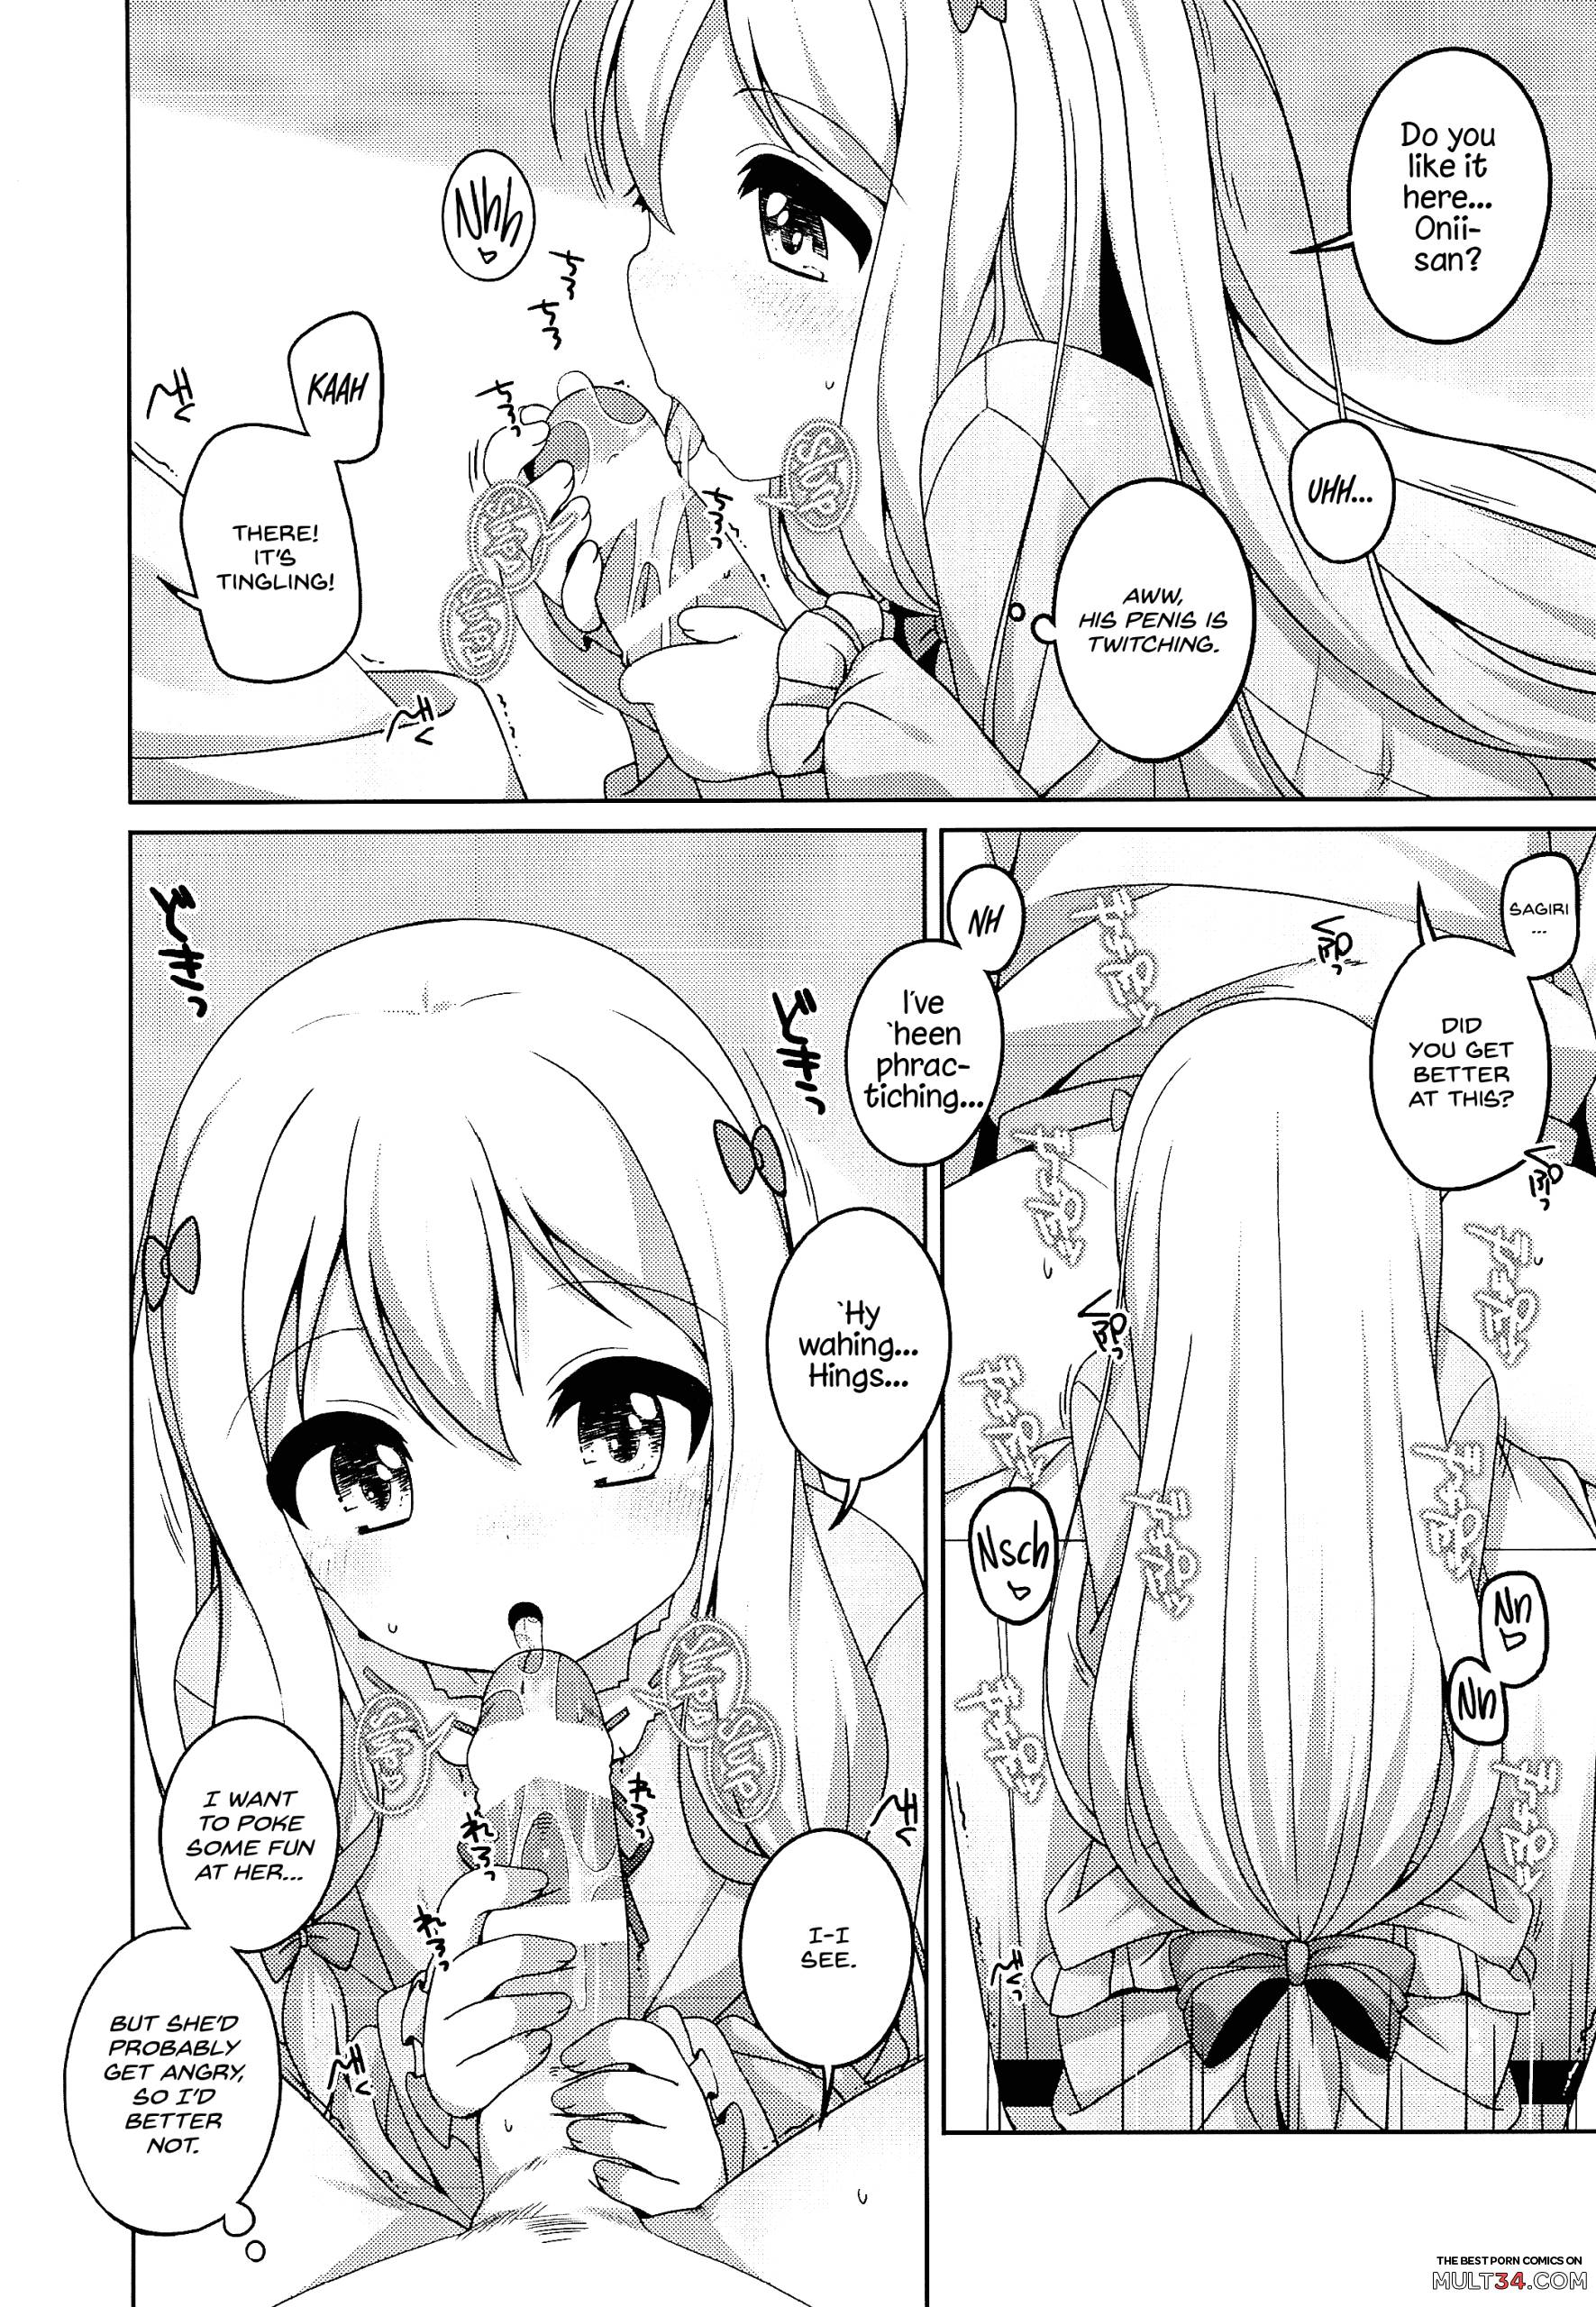 Sagiri-chan is cute page 3